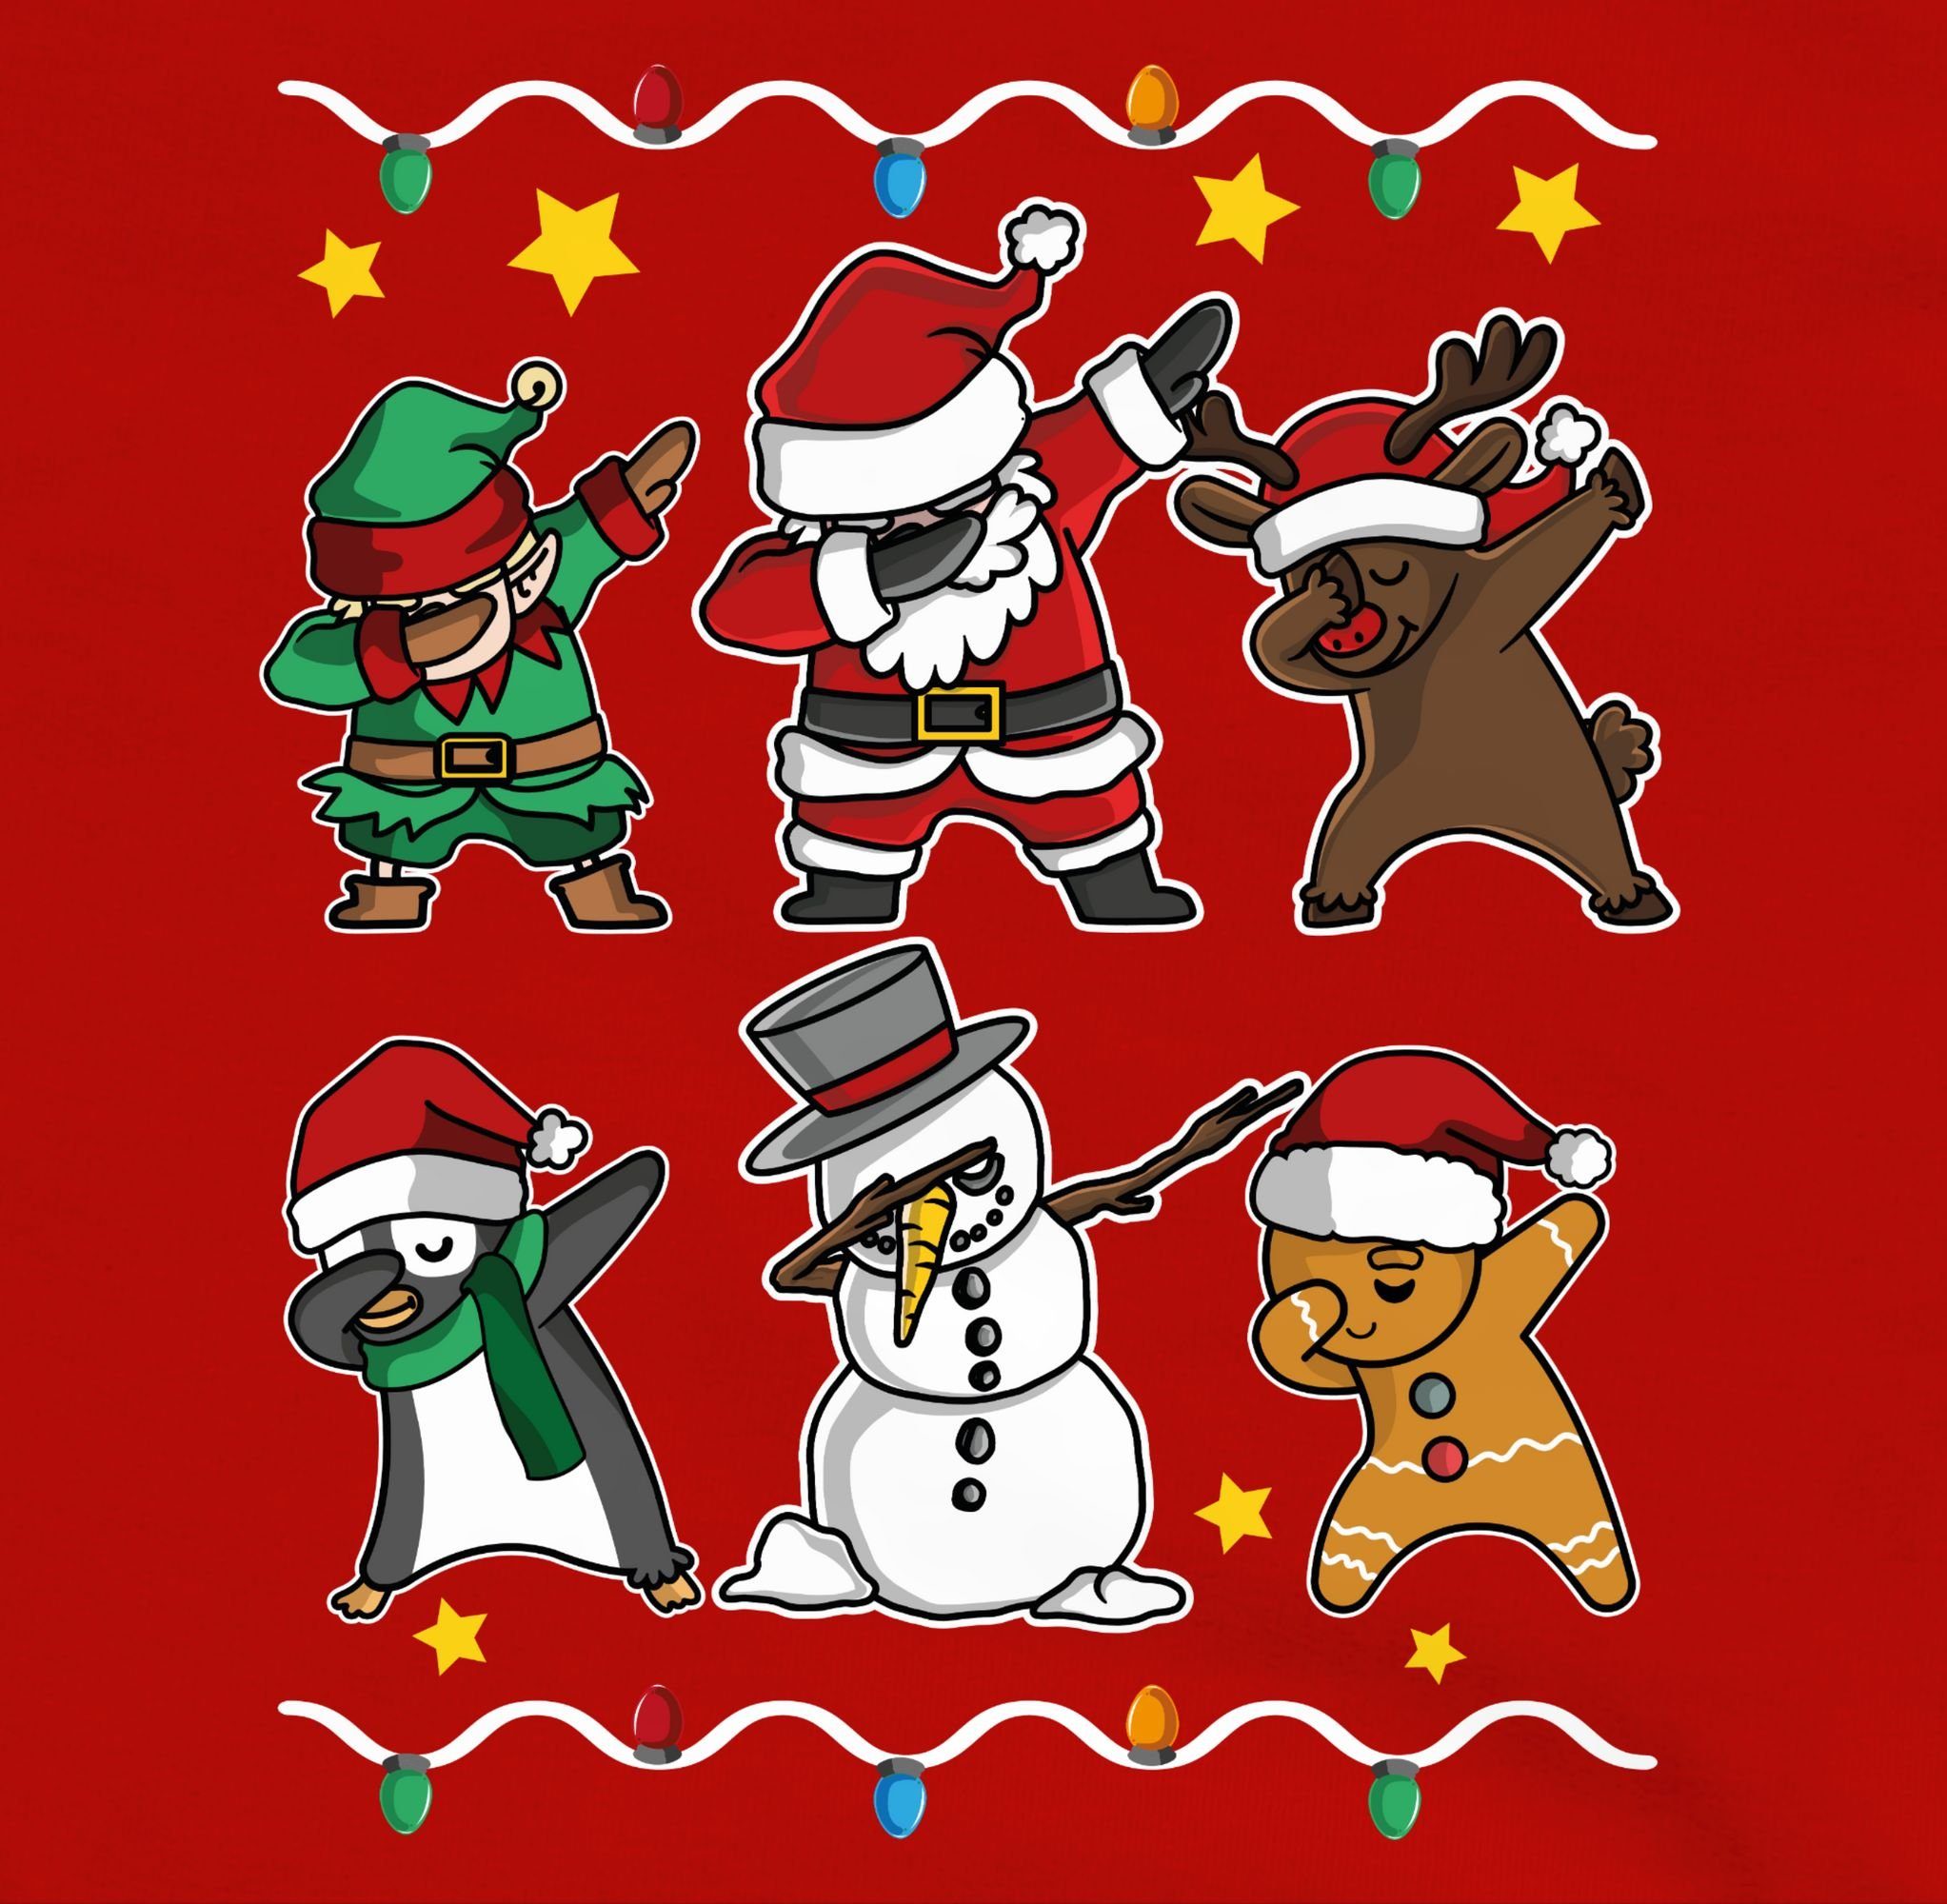 Shirtracer Hoodie Dabbing Weihnachtsfiguren Schneemann Rot/Schwarz Weihnachten Rentier Kinder Kleidung 1 Weihnachtsmann